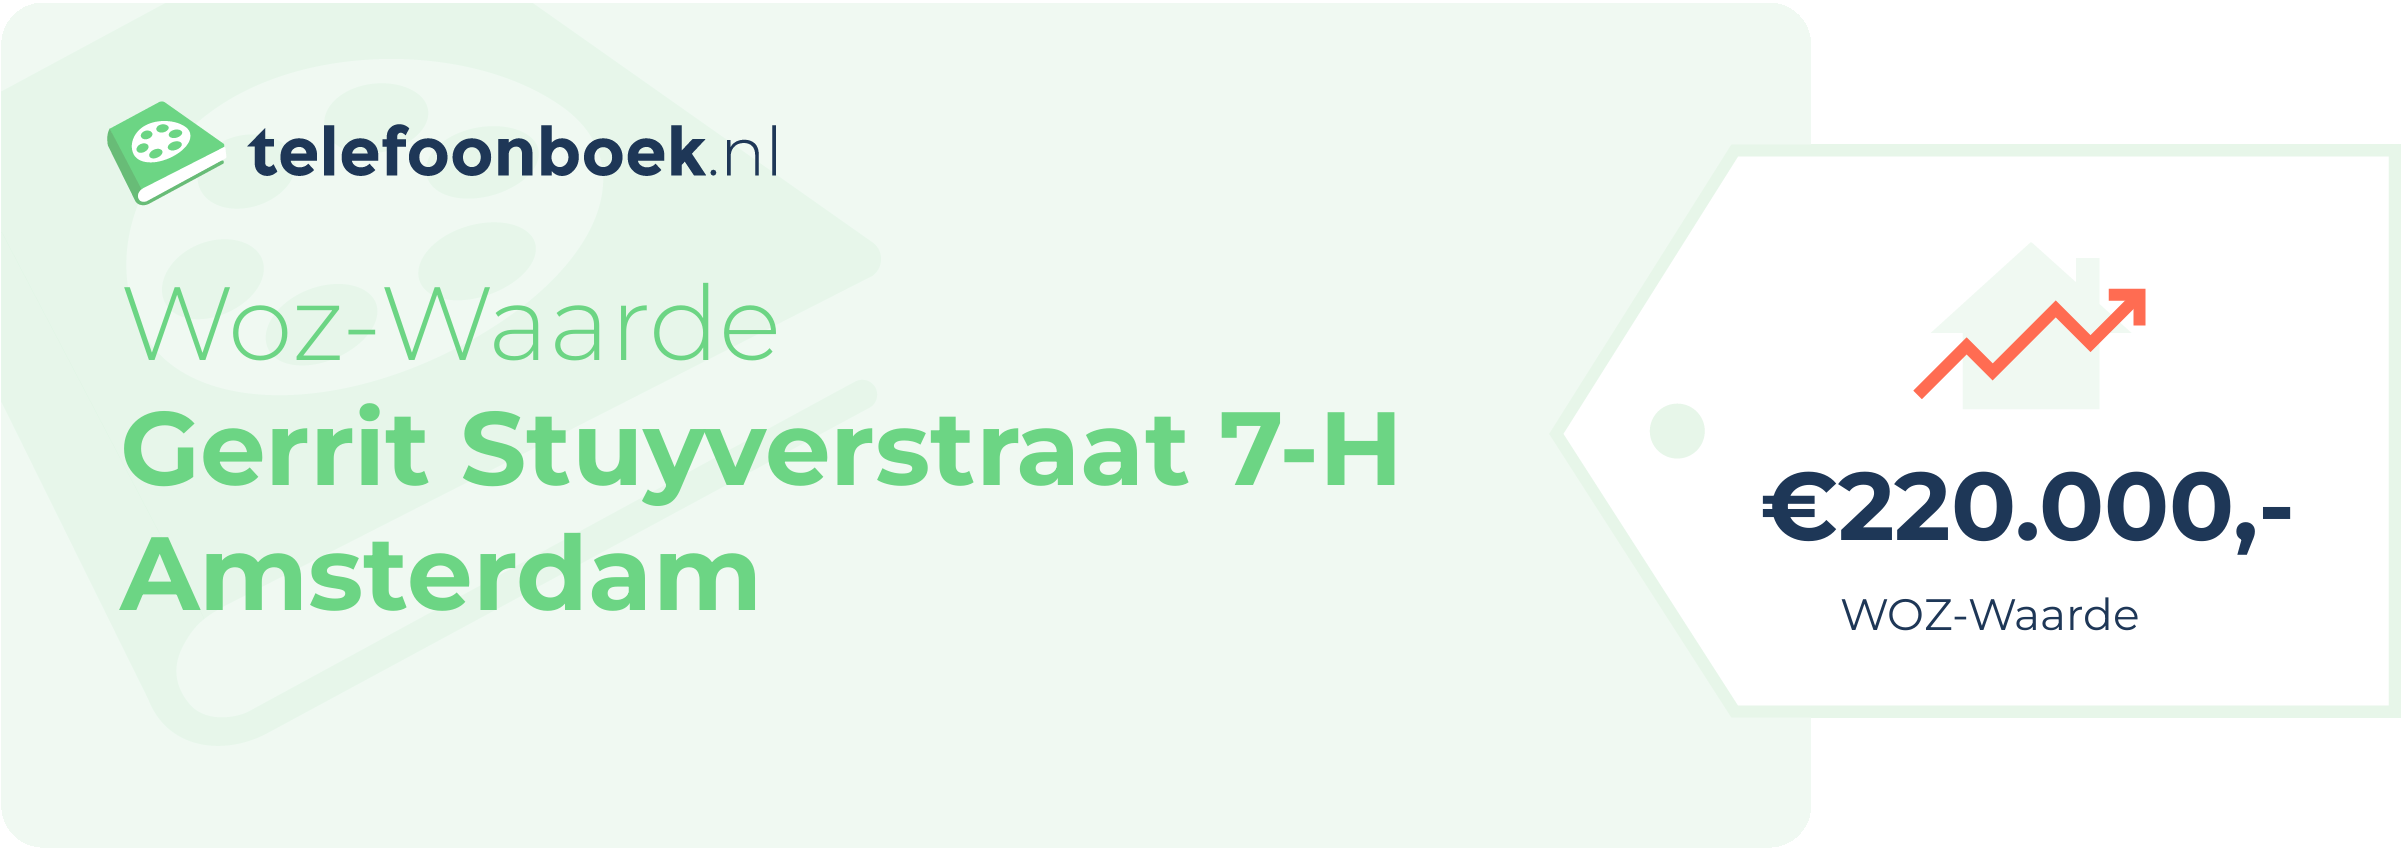 WOZ-waarde Gerrit Stuyverstraat 7-H Amsterdam